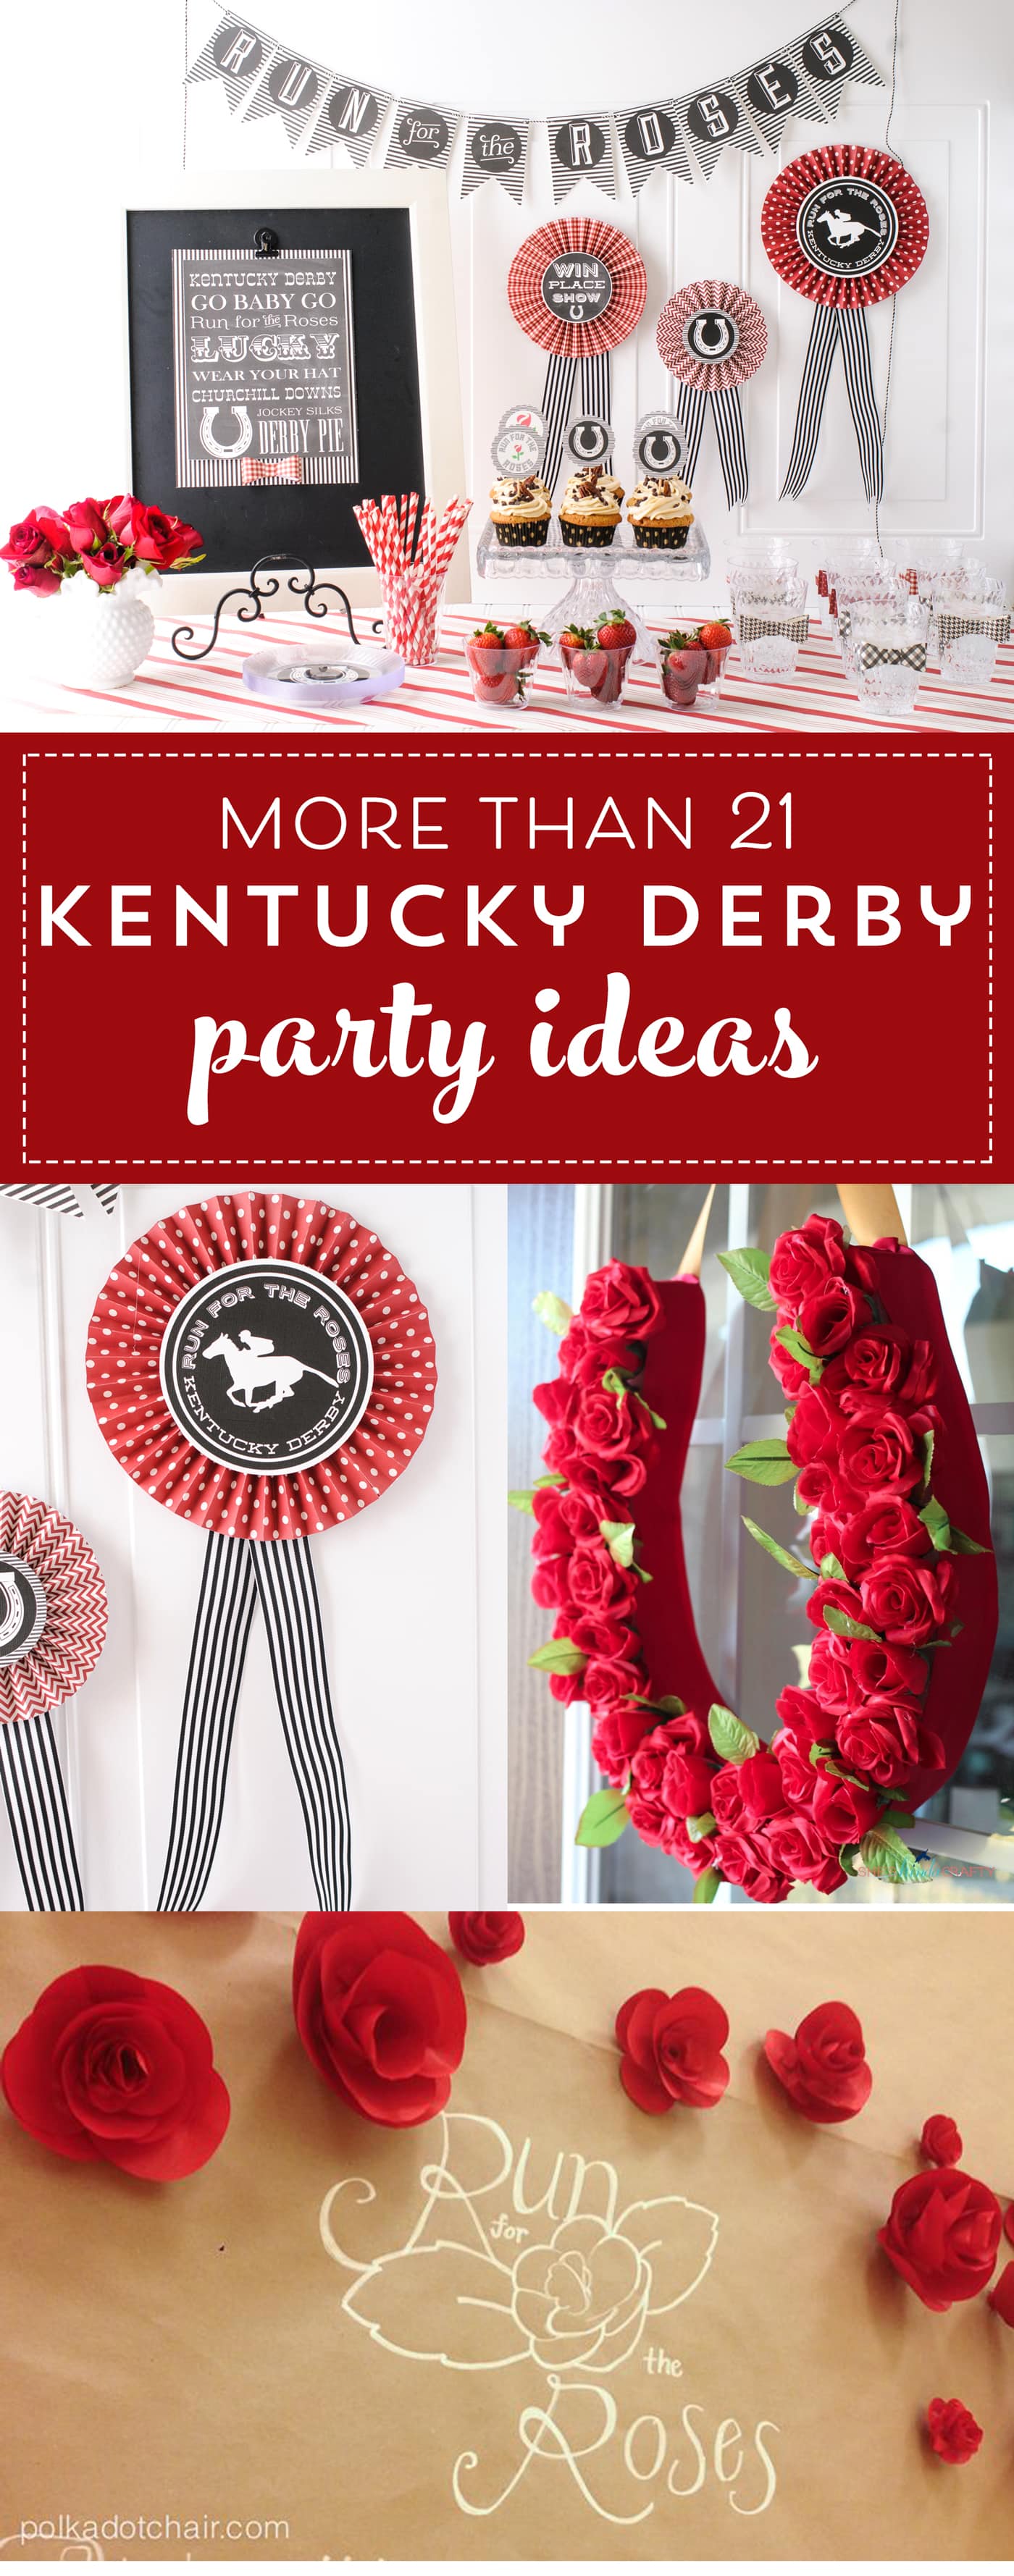 21 Adorable Kentucky Derby Party Ideas - The Polka Dot Chair